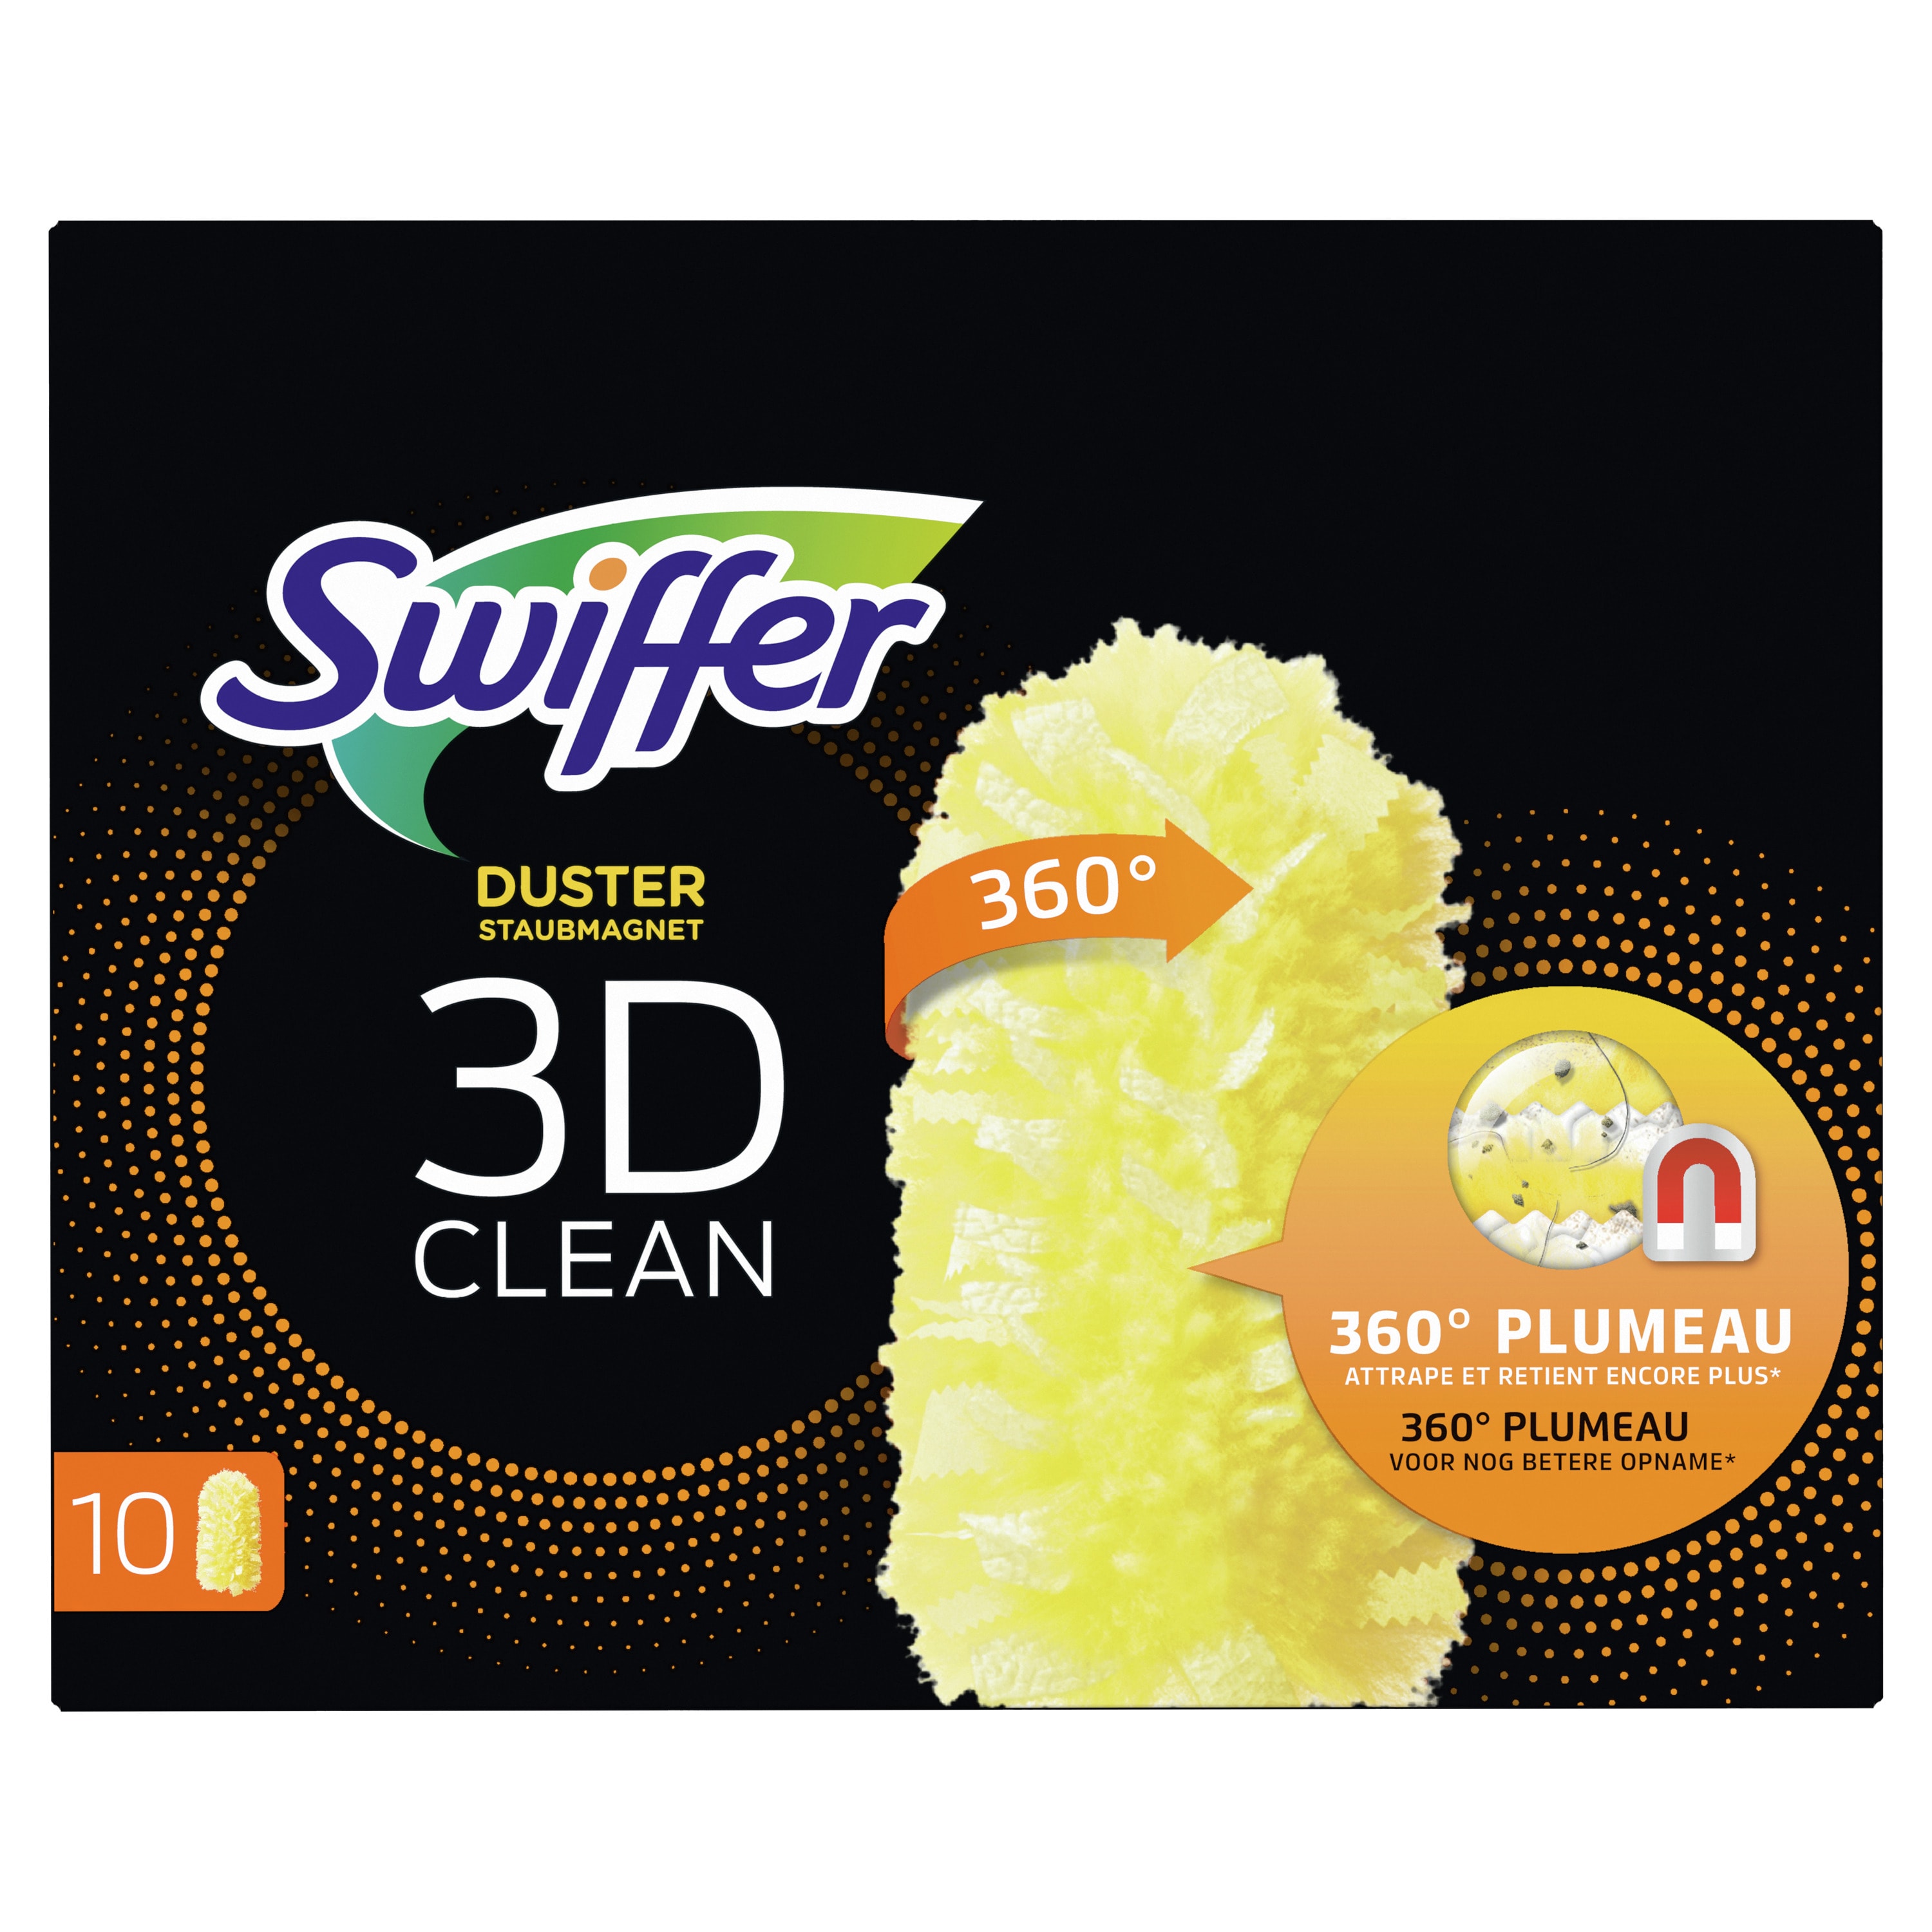 Promo Plumeau Nettoyage 3D Clean. Attrape Et Retient La Poussière SWIFFER  Duster chez Géant Casino